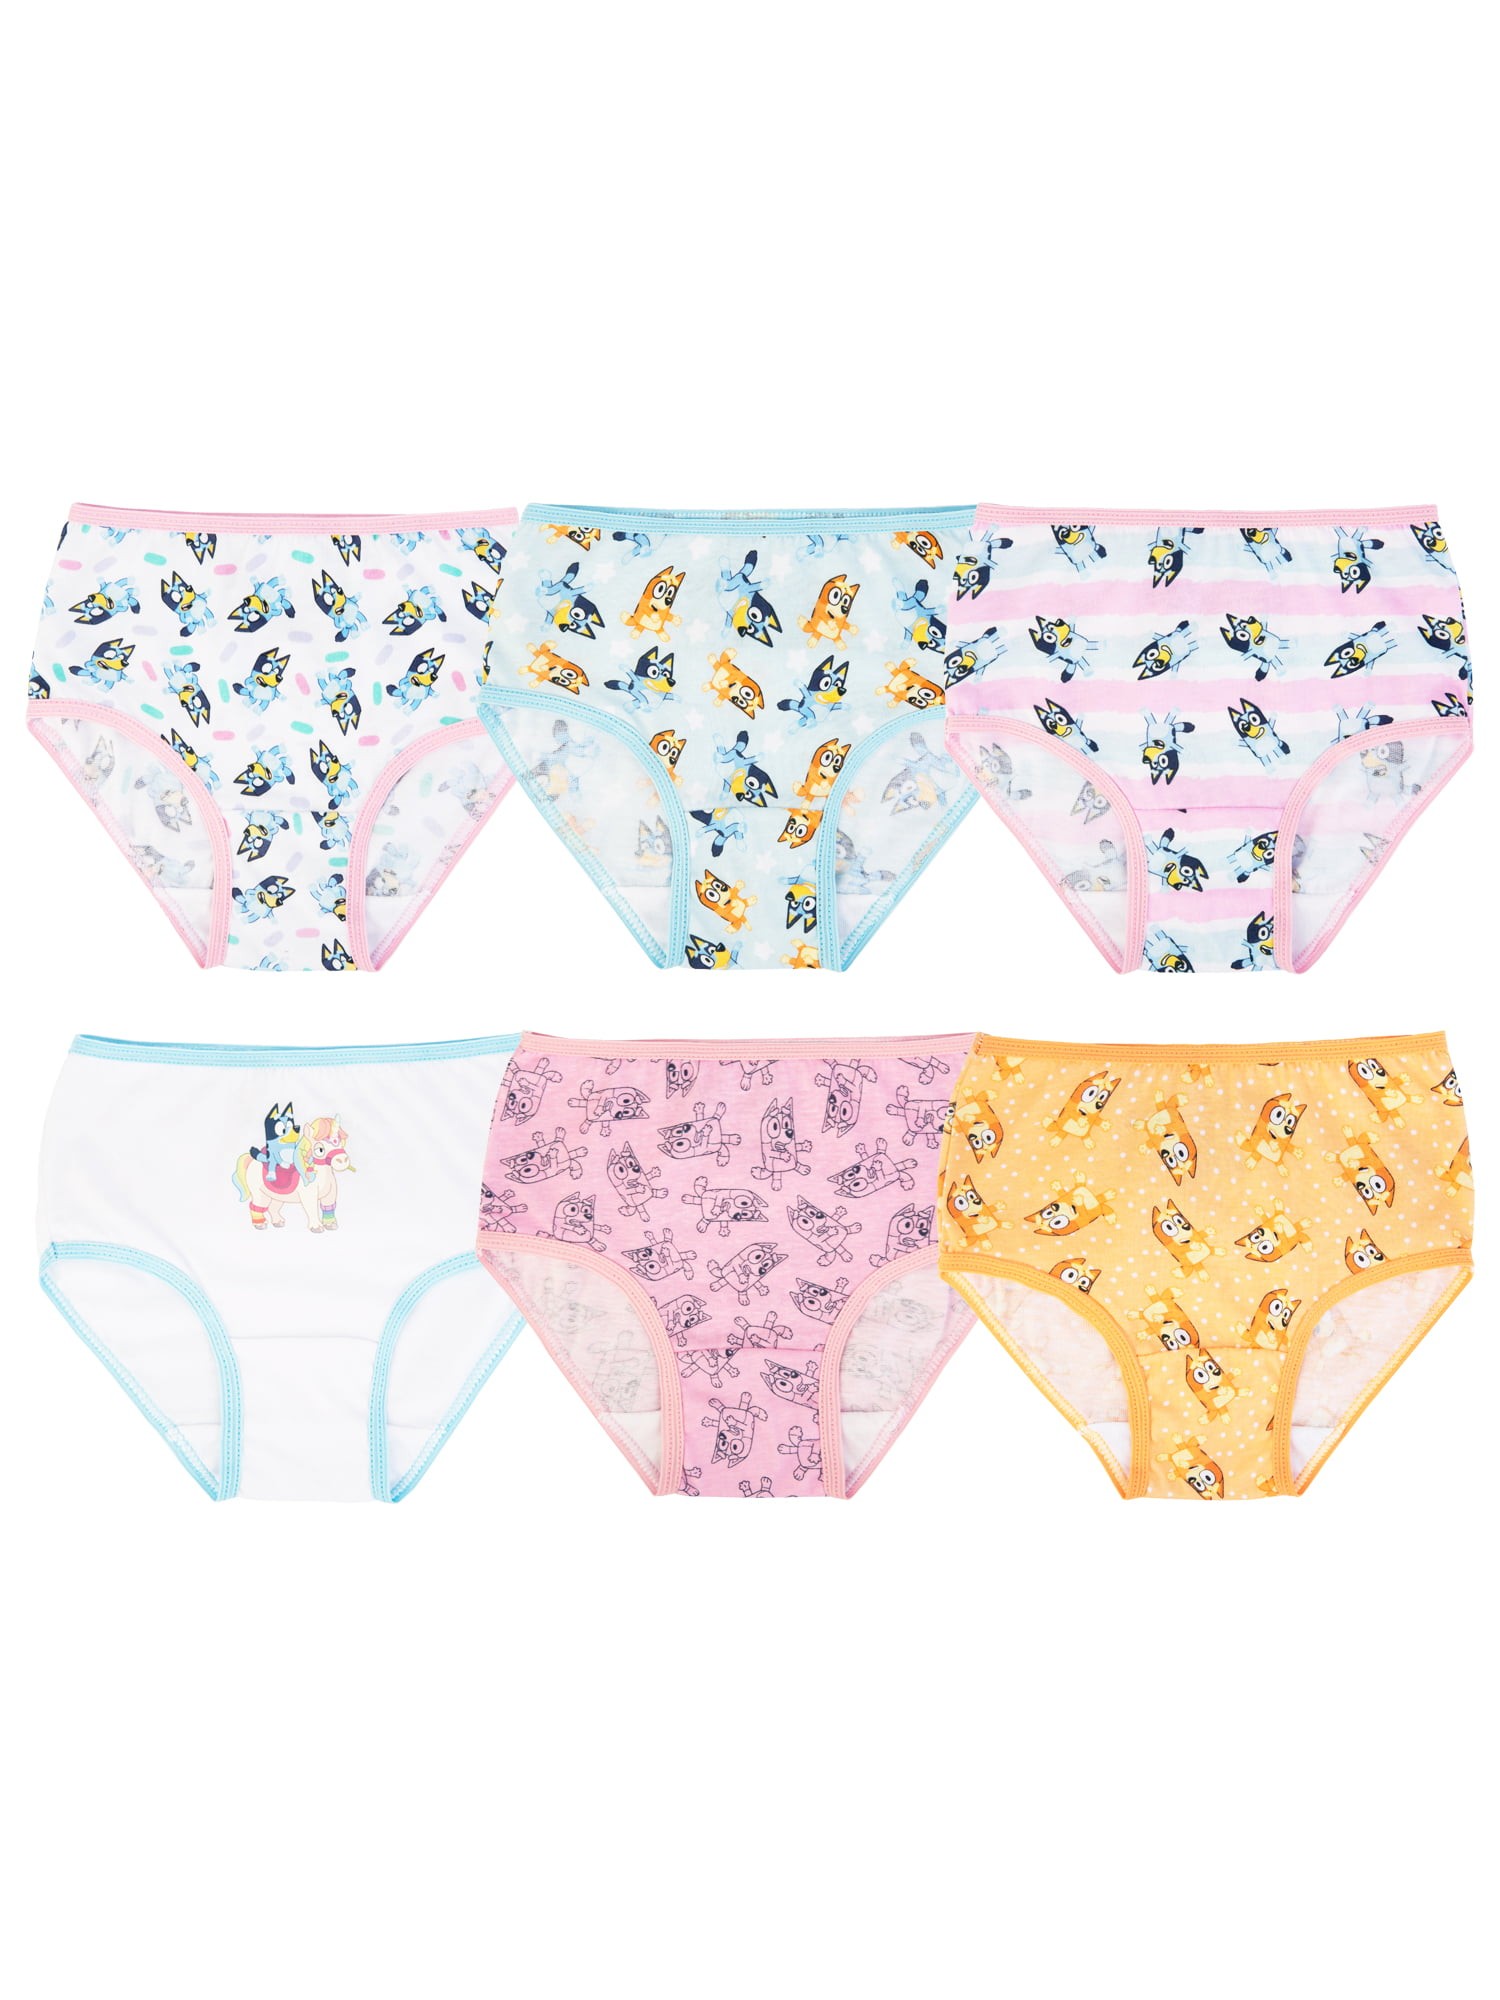 Frozen Toddler Girls Underwear, 6 Pack Sizes 2T-4T 